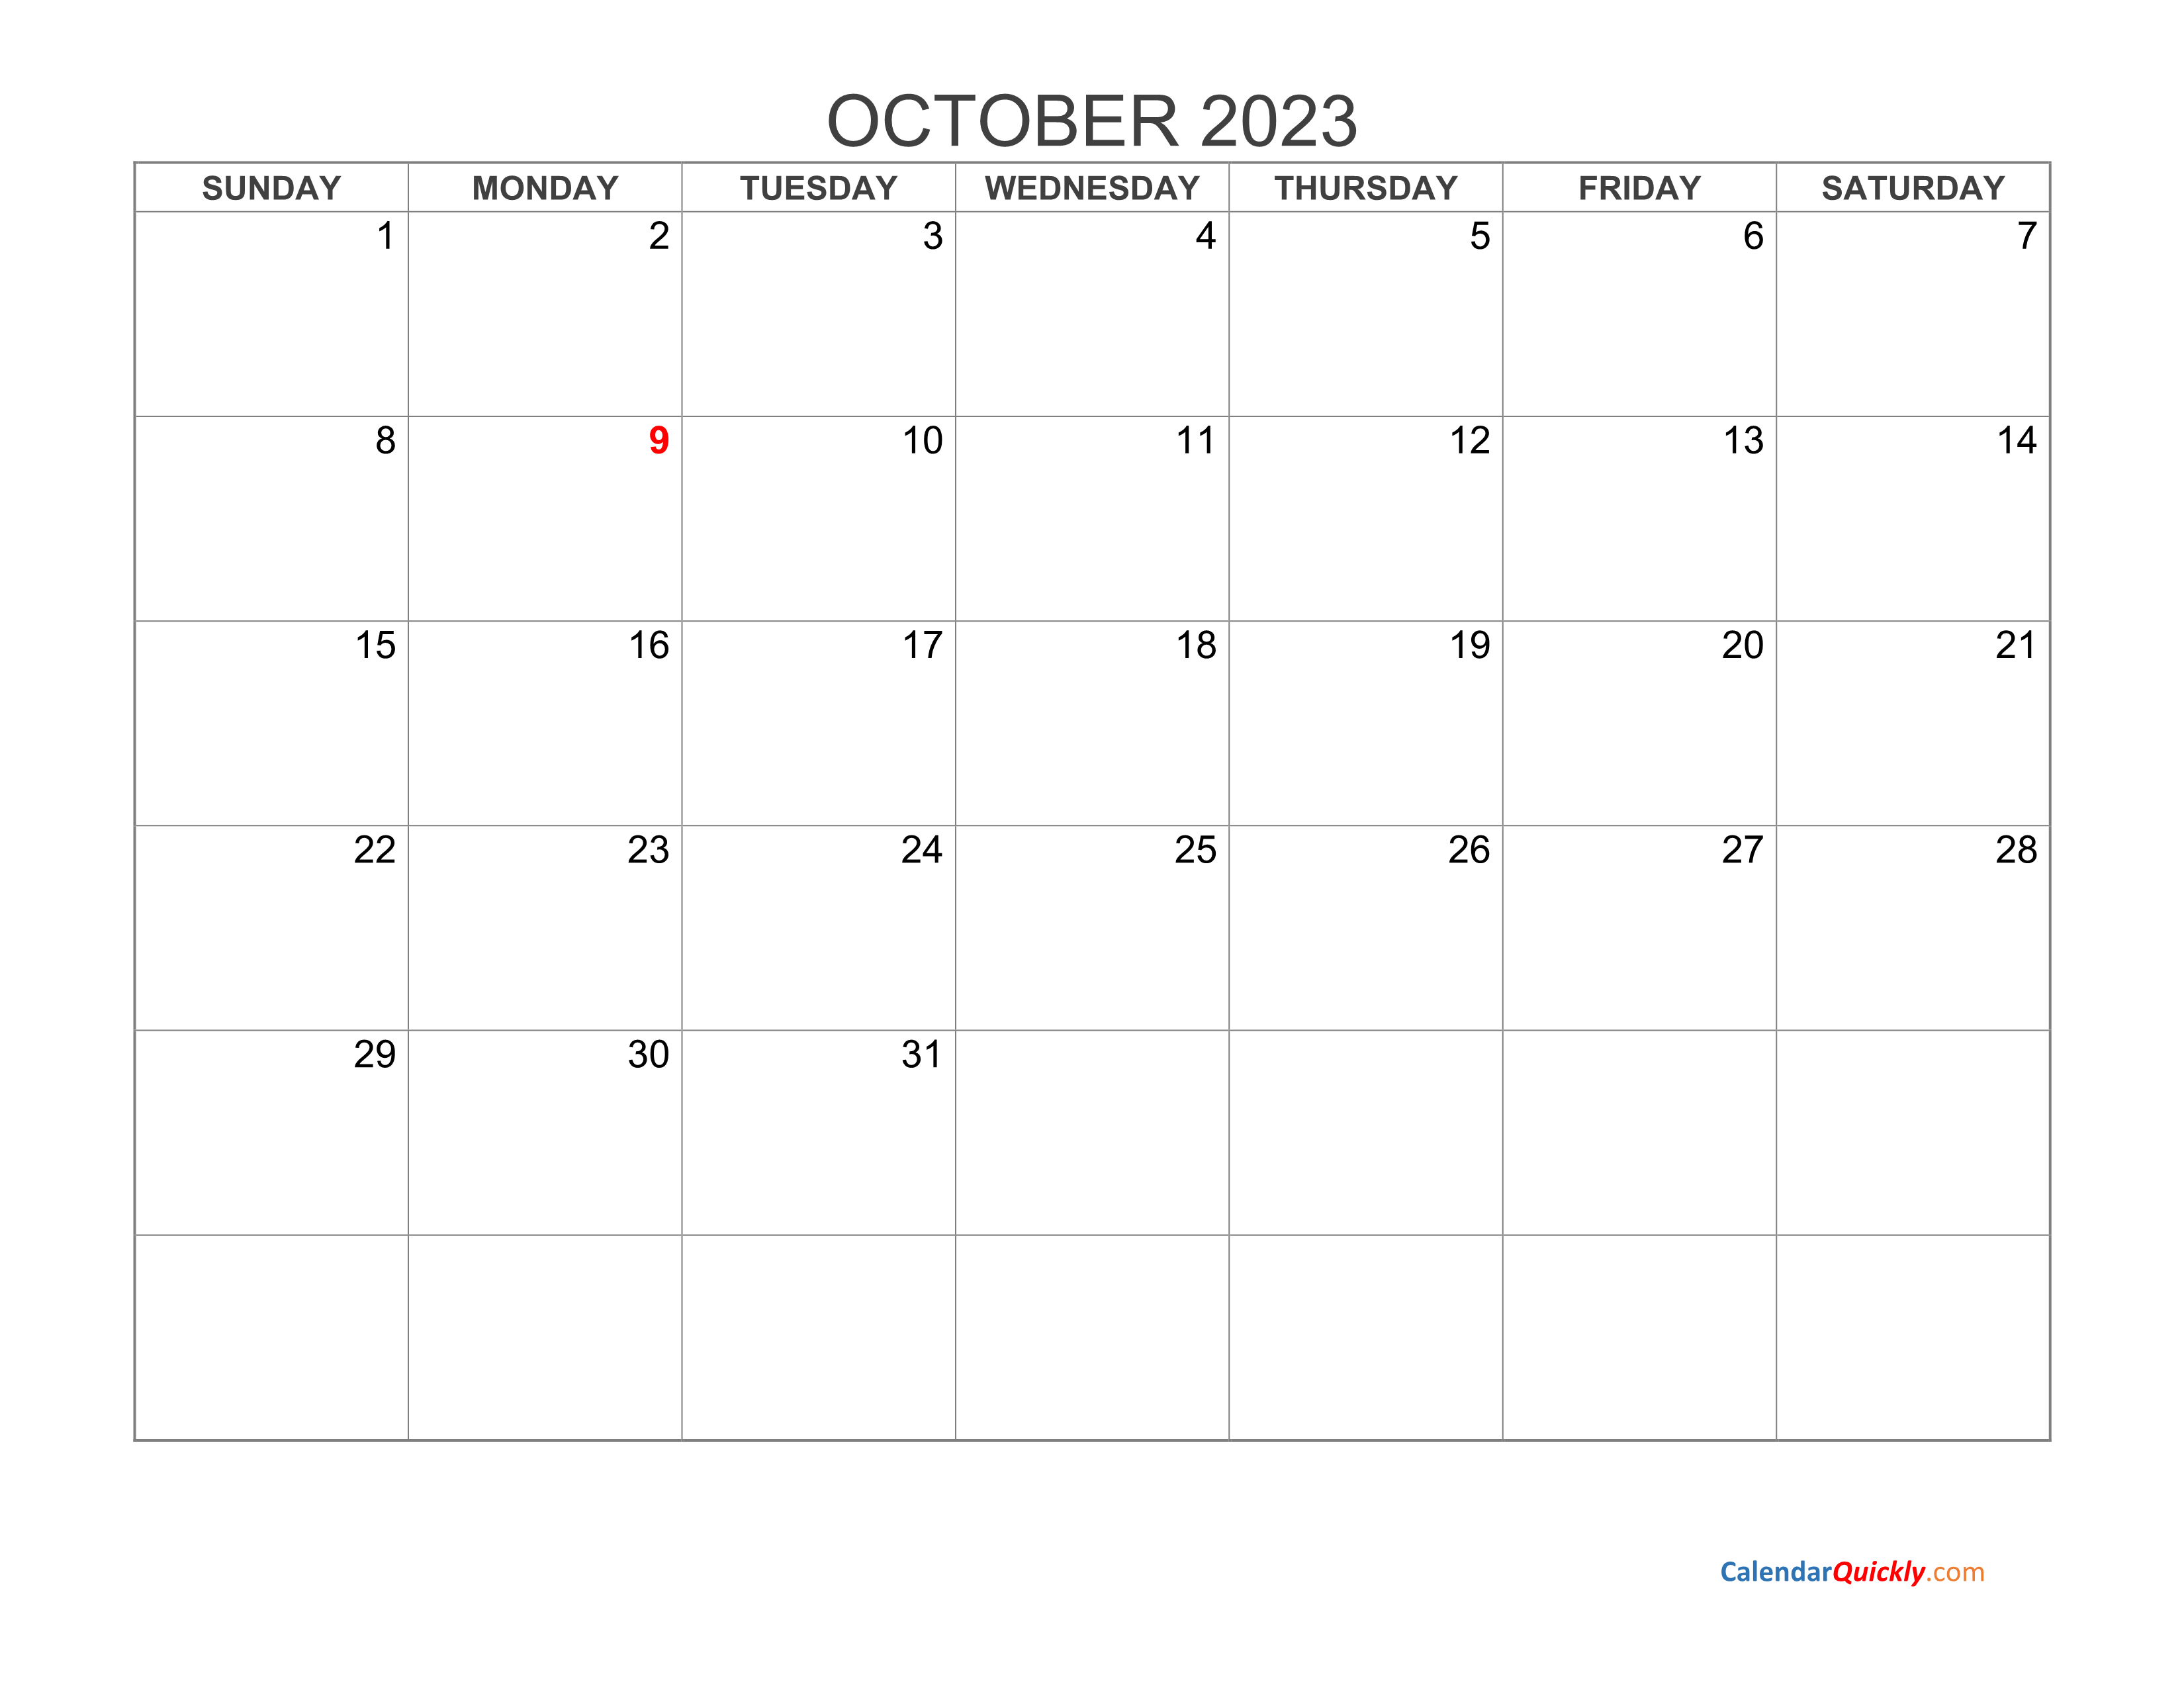 october-2023-blank-calendar-calendar-quickly